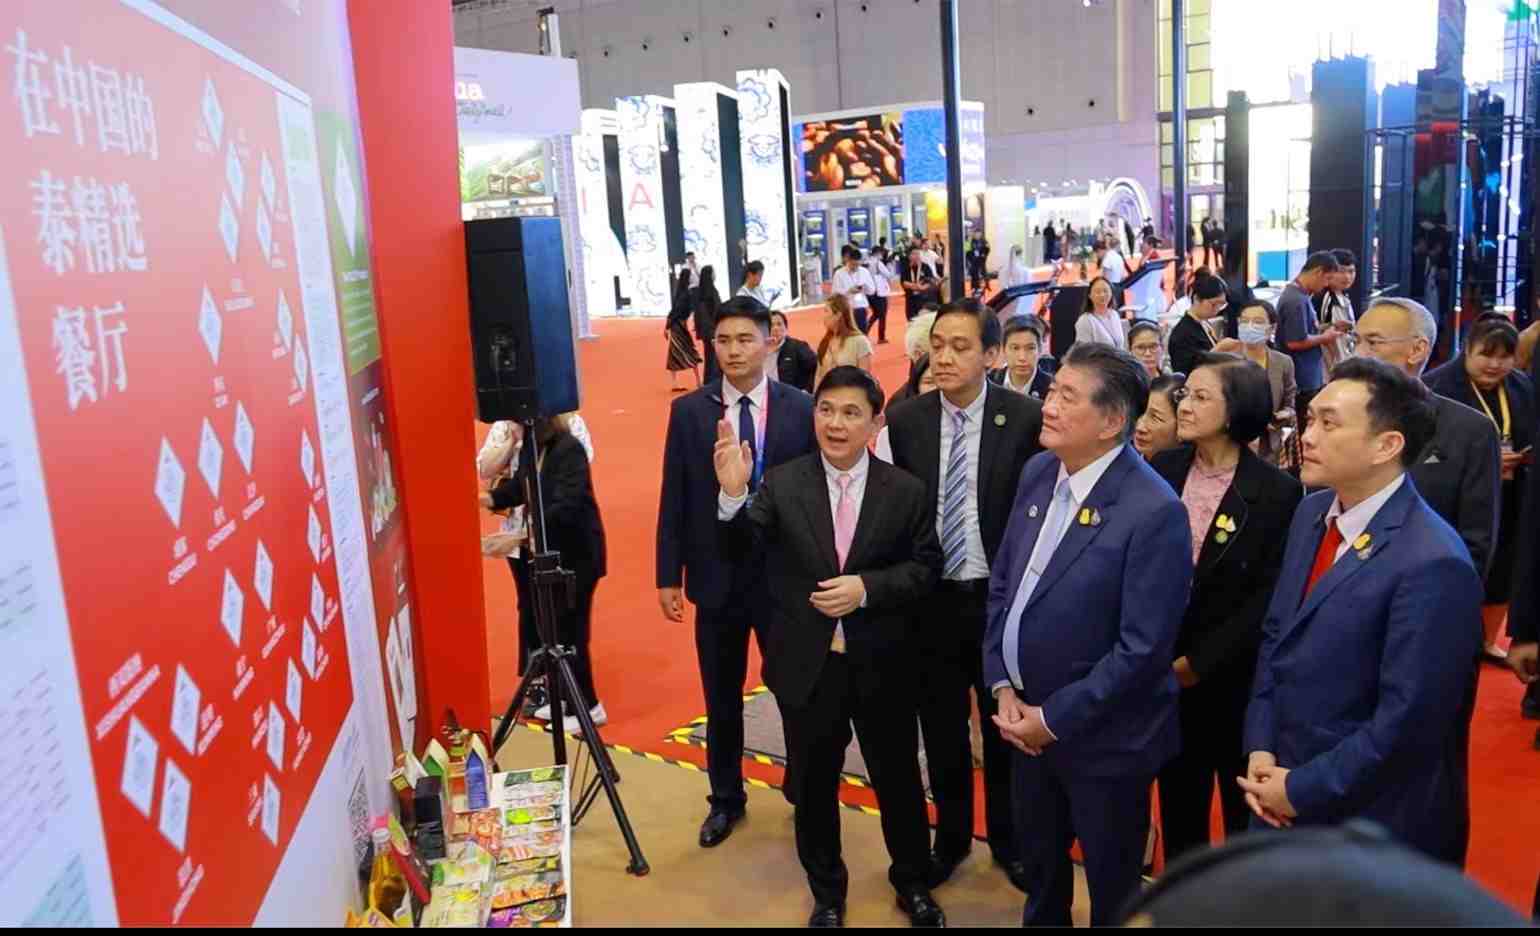 ‘ภูมิธรรม’ เผย งาน CIIE เป็นการเปิดตลาดจีน ช่วยให้ทั้งไทย-จีนได้ประโยชน์